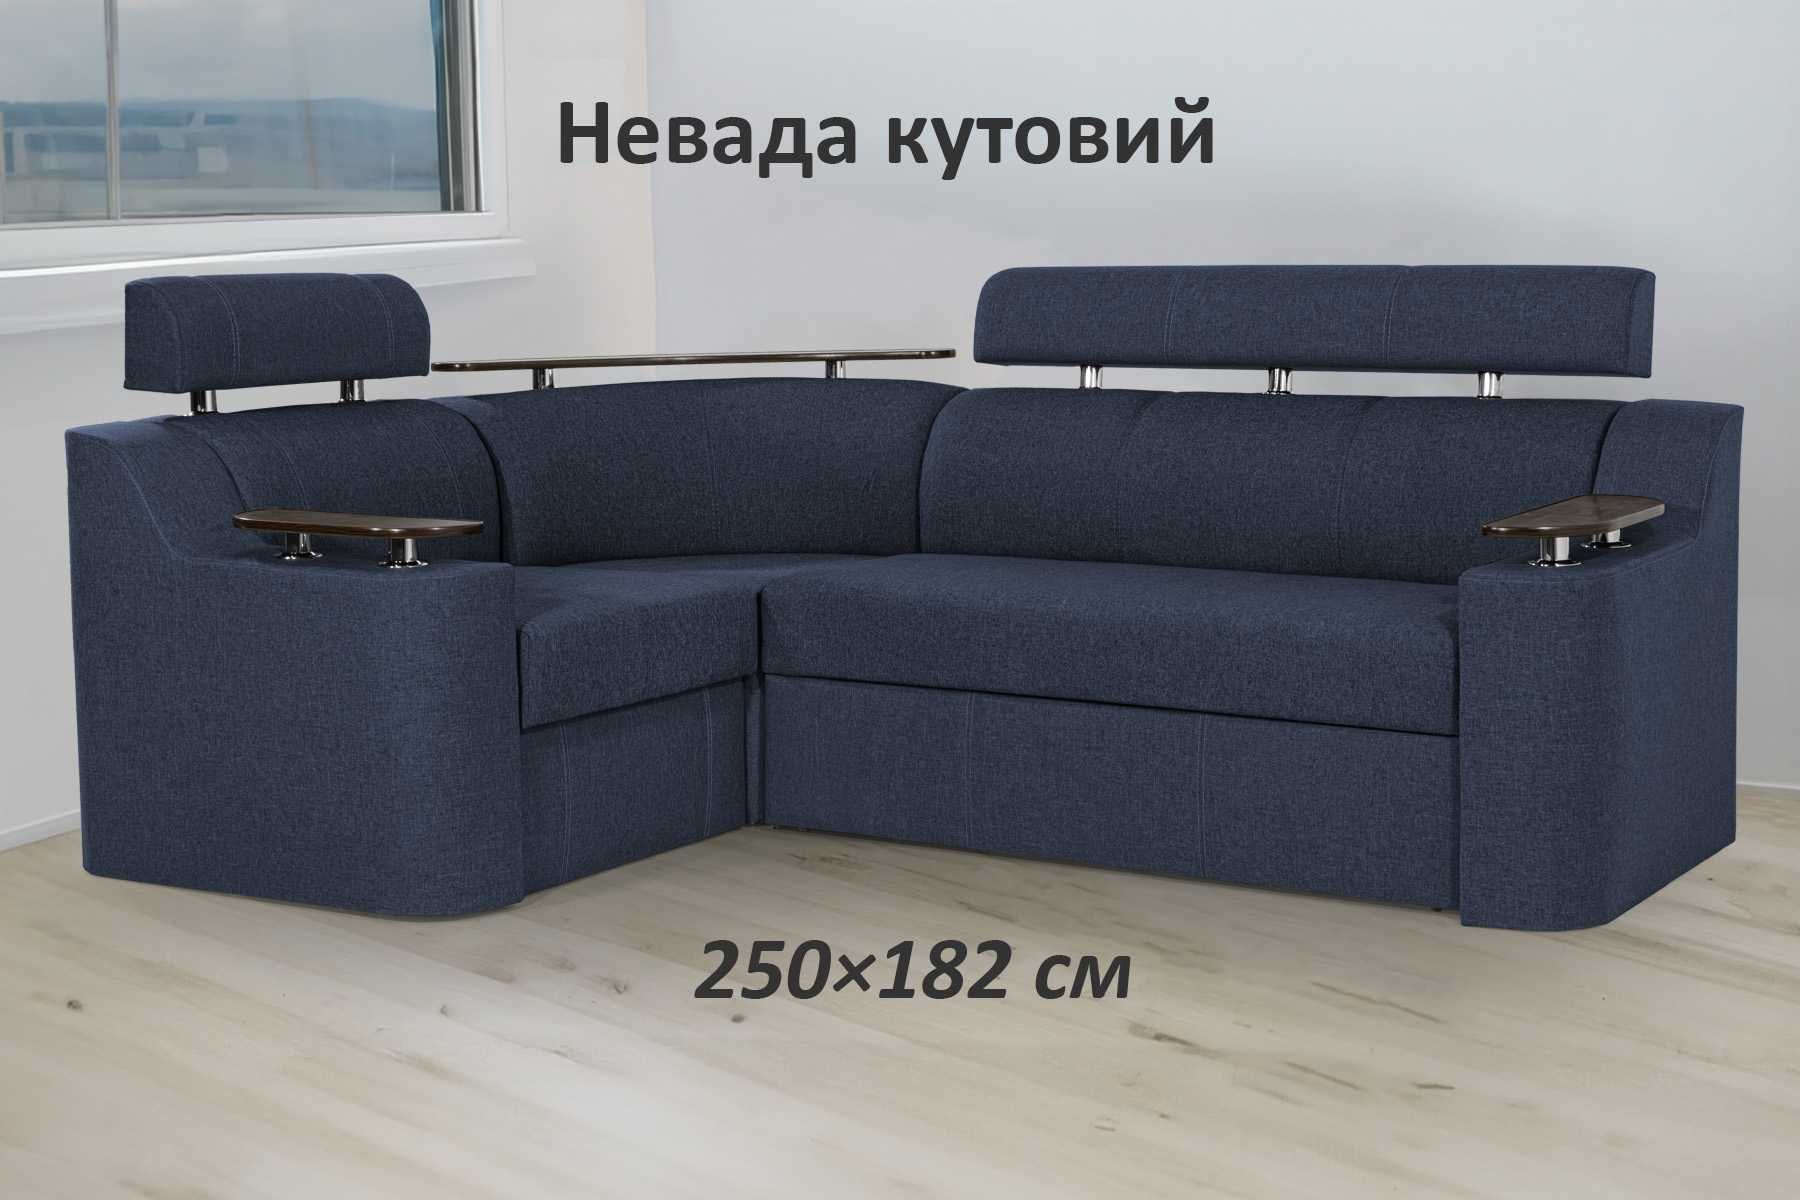 Кутовий диван. Доставка Дніпро, область, Україна